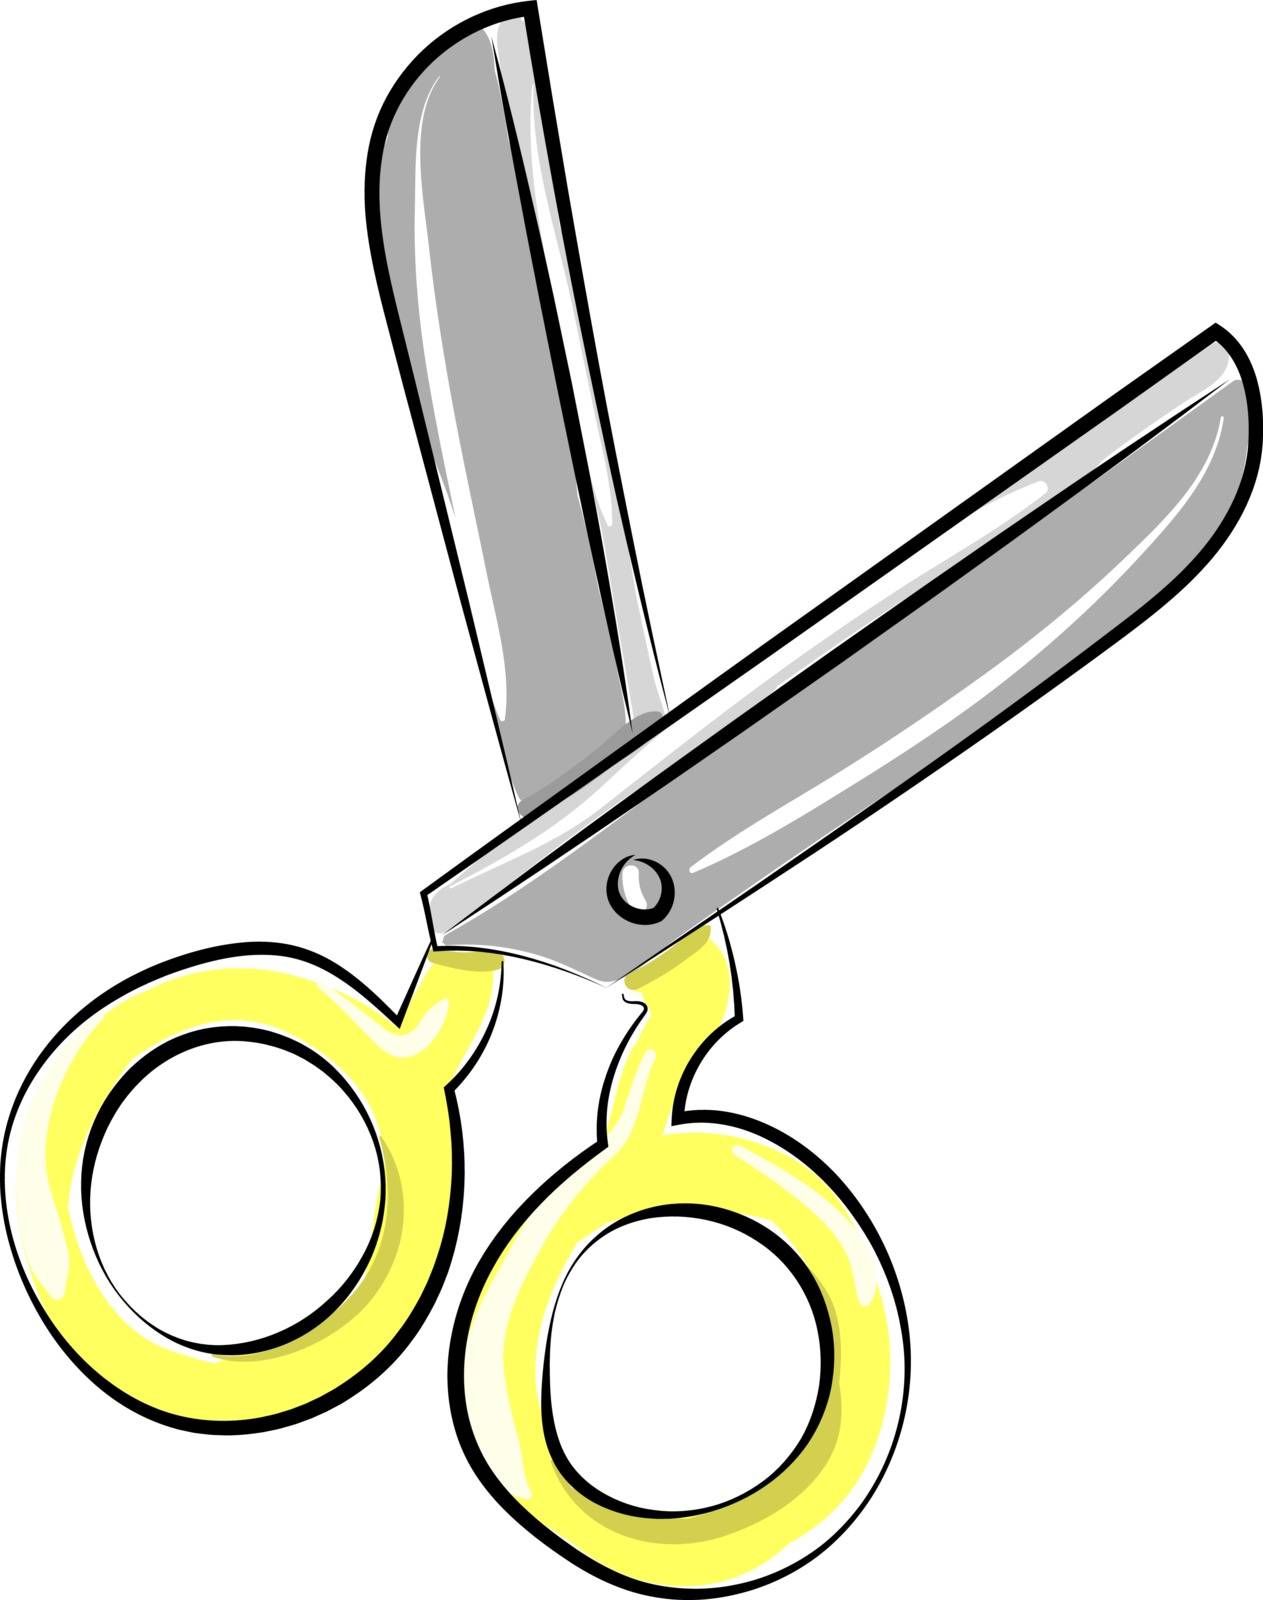 Scissors, illustration, vector on white background. by Morphart